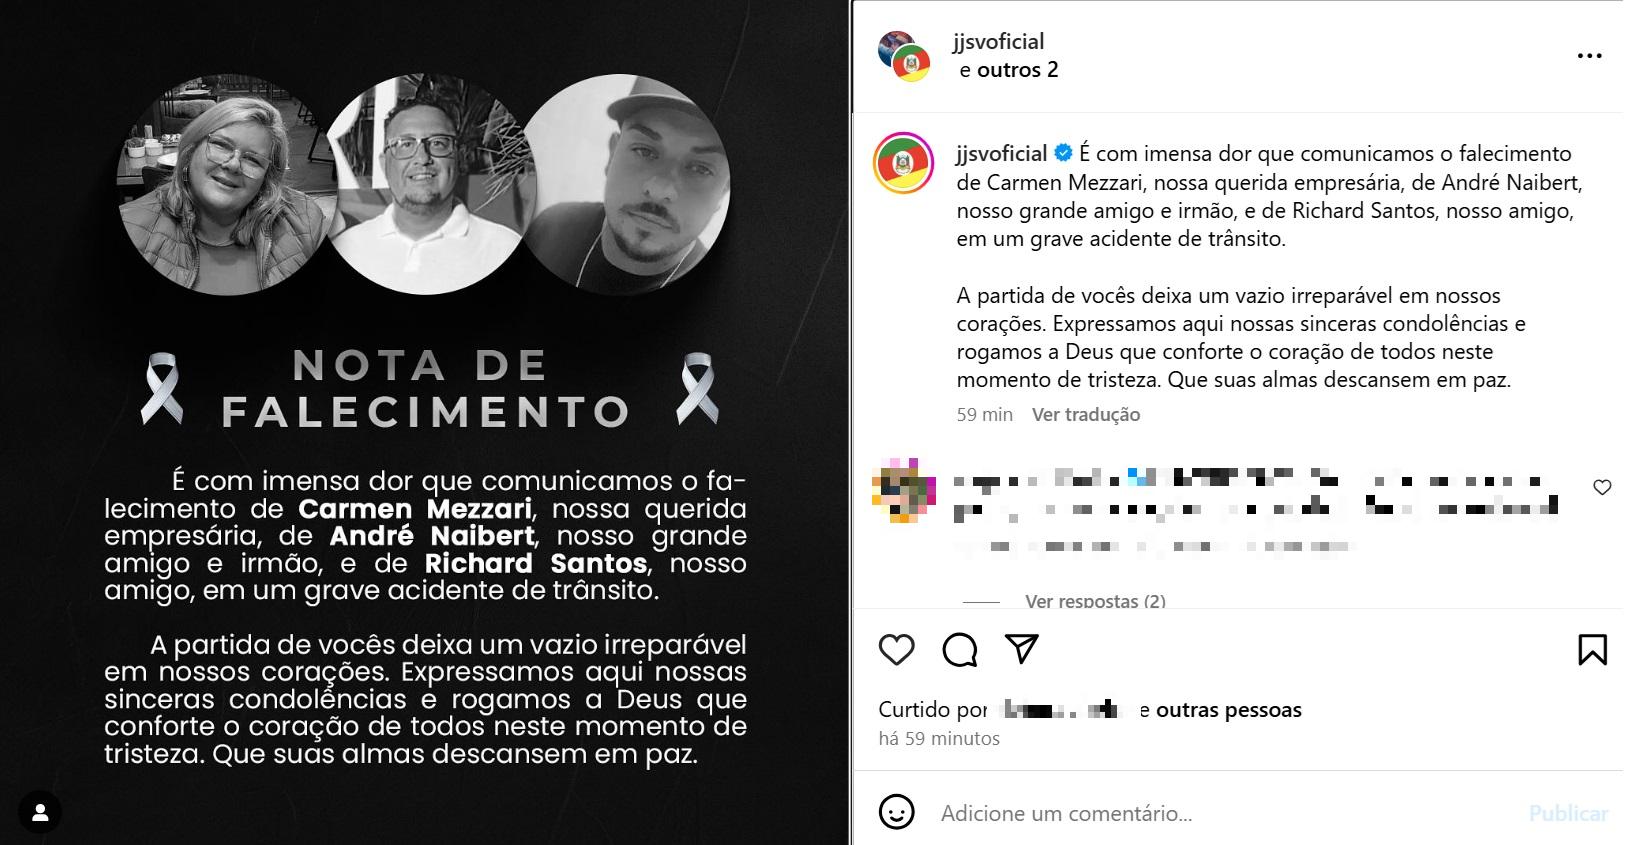 Publicação do Grupo Julian e Juliano & Só Vanerão (JJVS) no Instagram confirma a identidade das vítimas da colisão e lamenta a morte das três pessoas